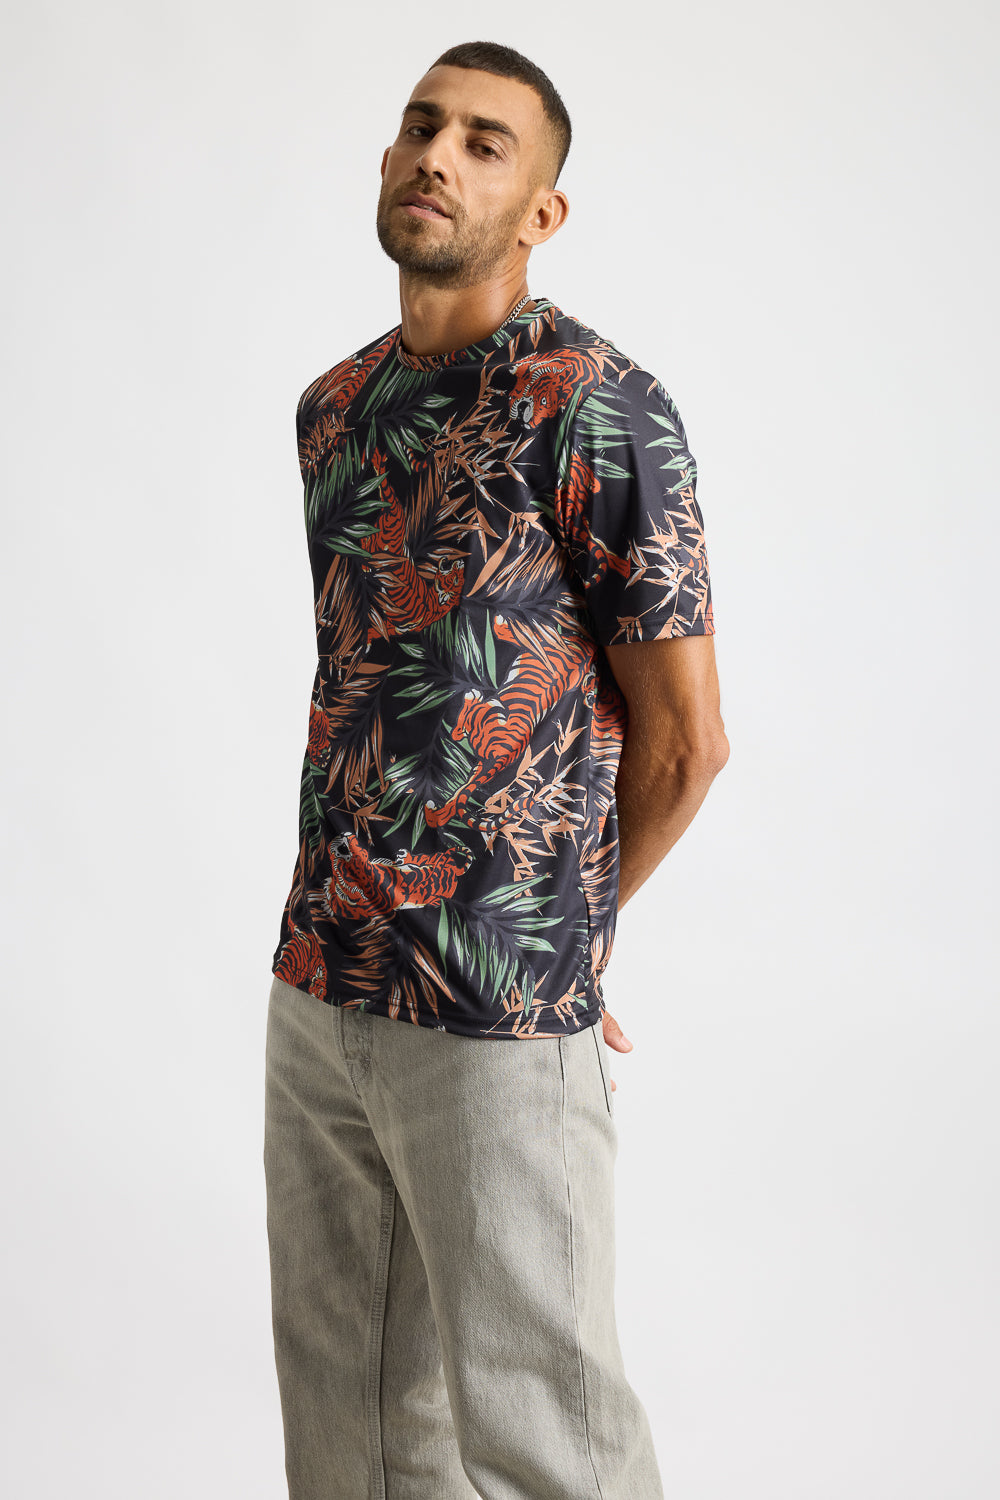 AOP Men's T-shirt - Tropics